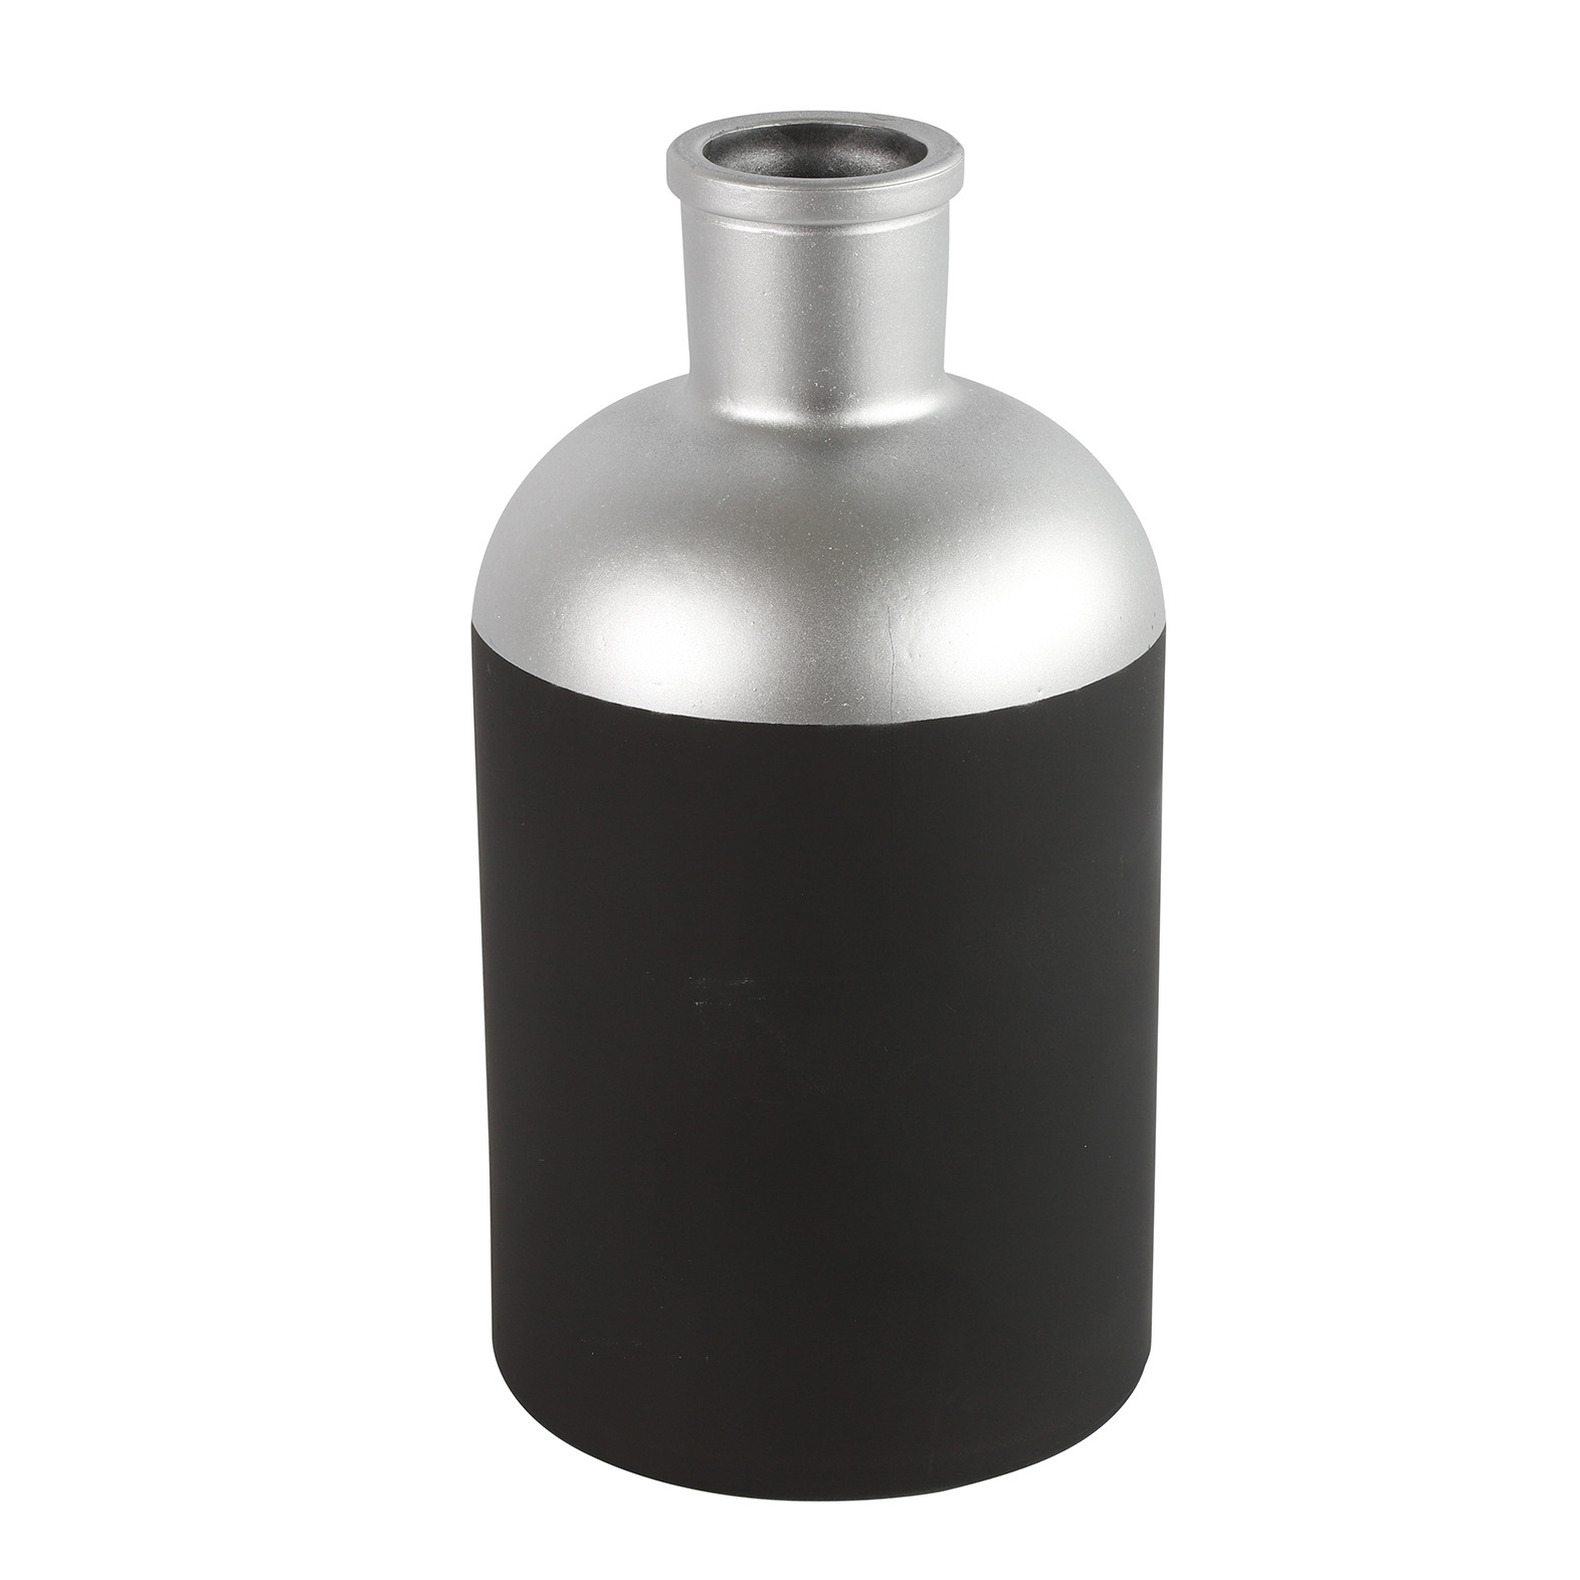 Countryfield Bloemen of deco vaas - zwart/zilver - glas - luxe fles vorm - D14 x H26 cm -